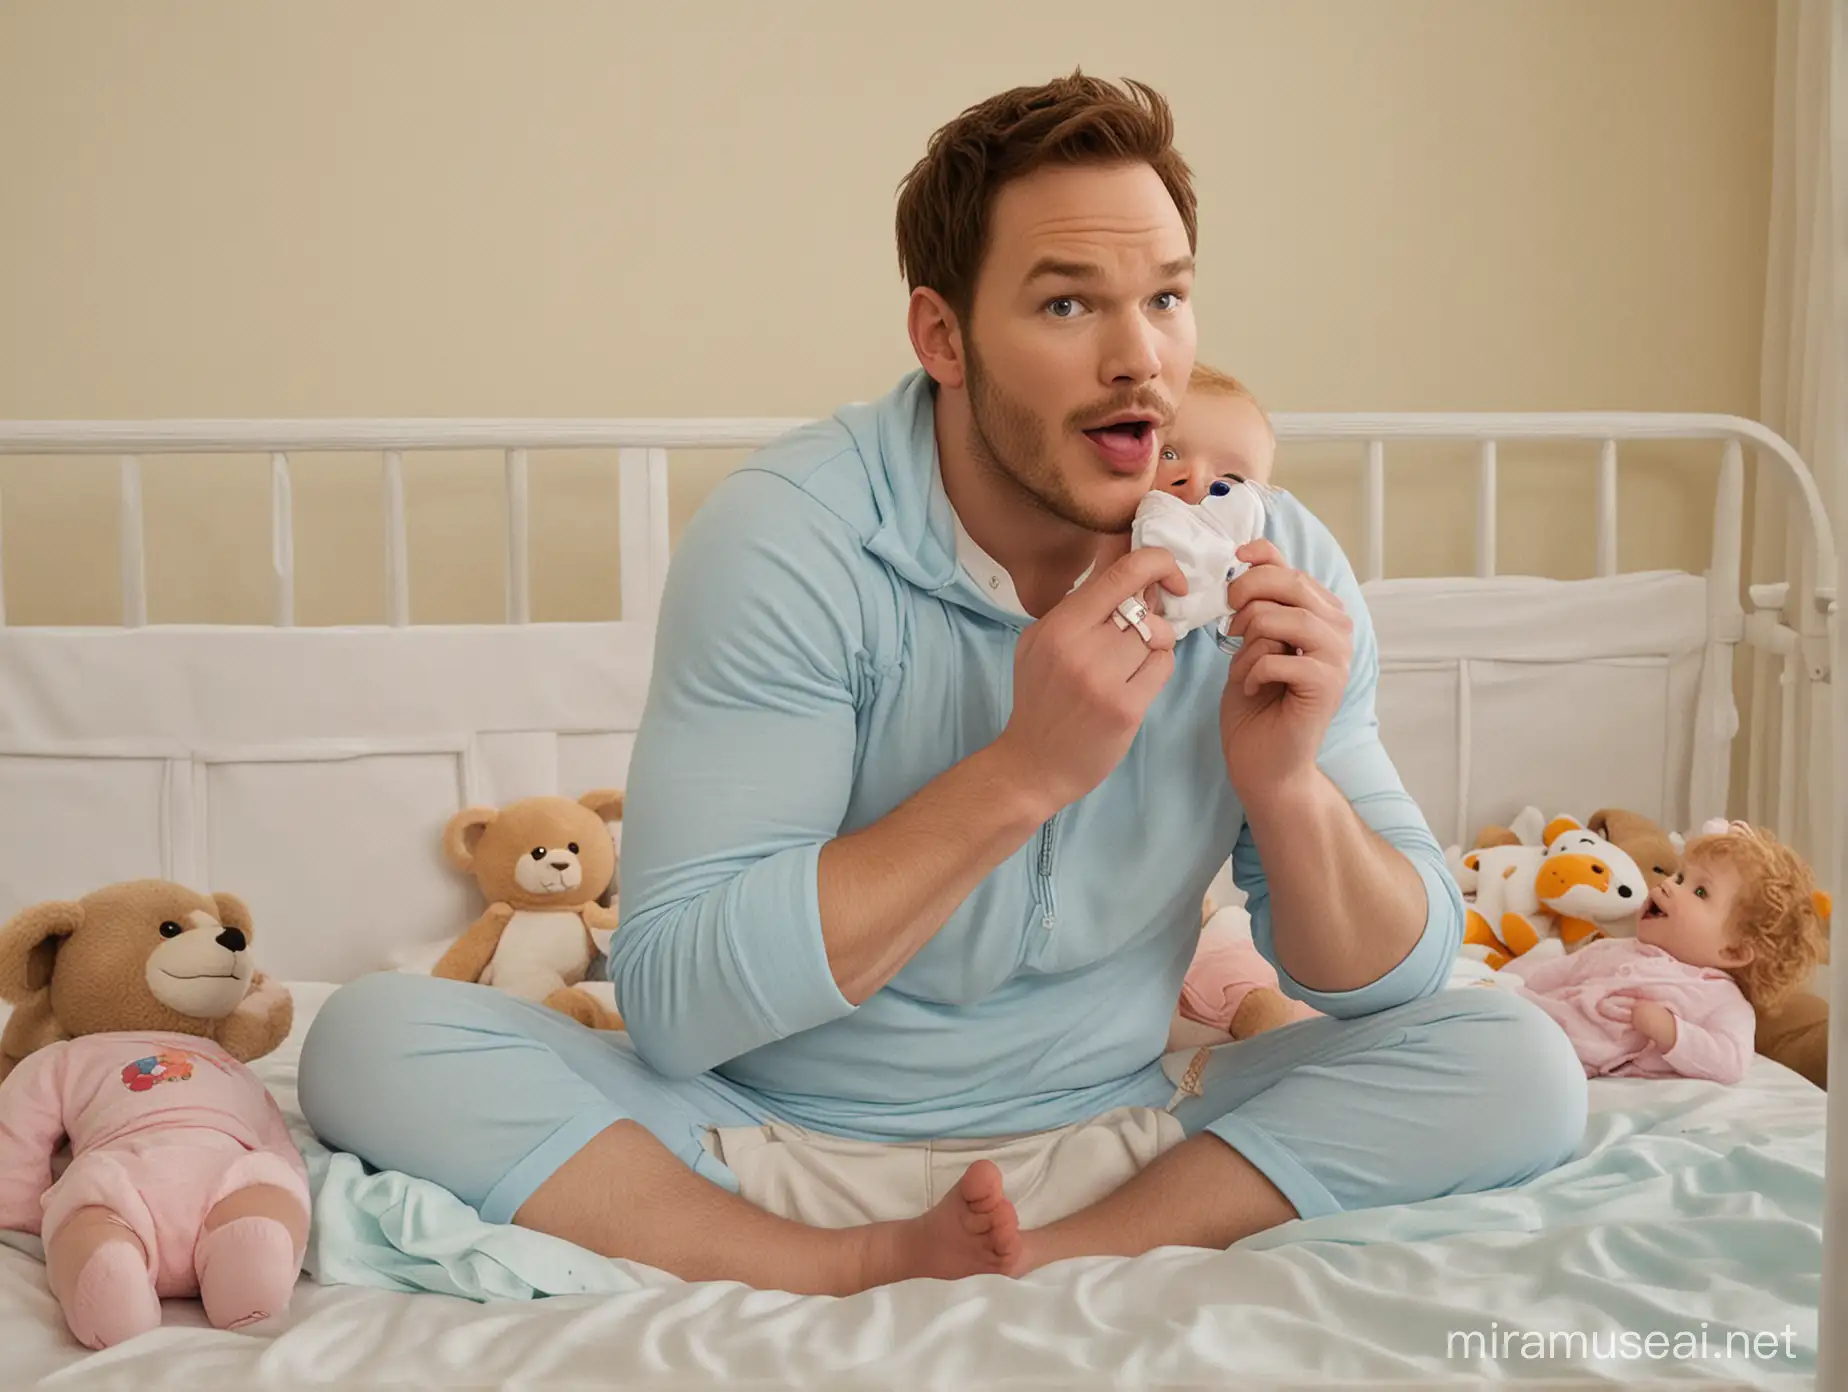 Chris Pratt Dressed as an Adult Baby Playing in Nursery